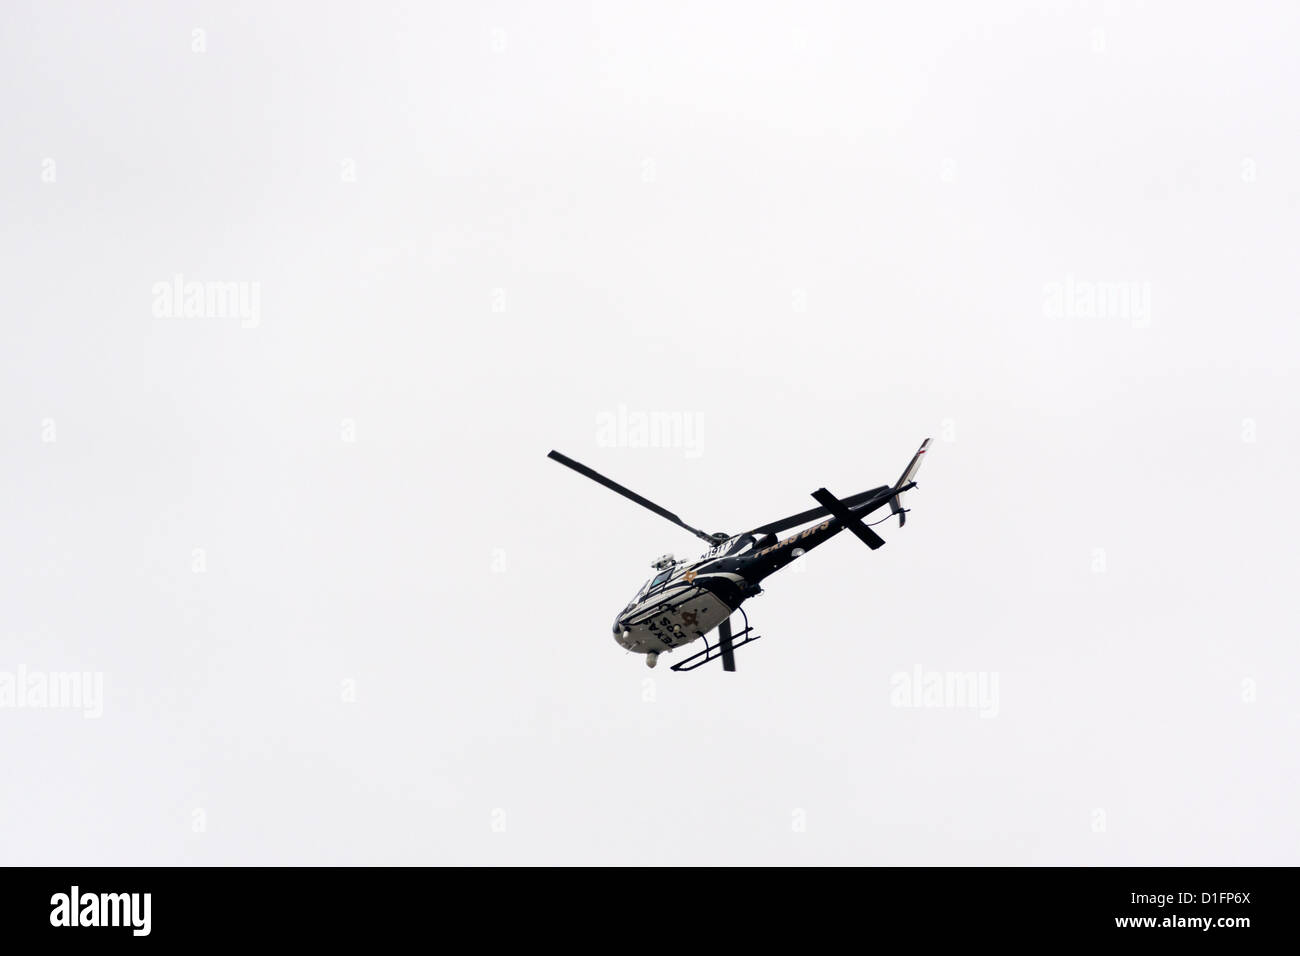 Texas Dipartimento della Pubblica Sicurezza in bilico in elicottero sopra la missione, Texas Foto Stock